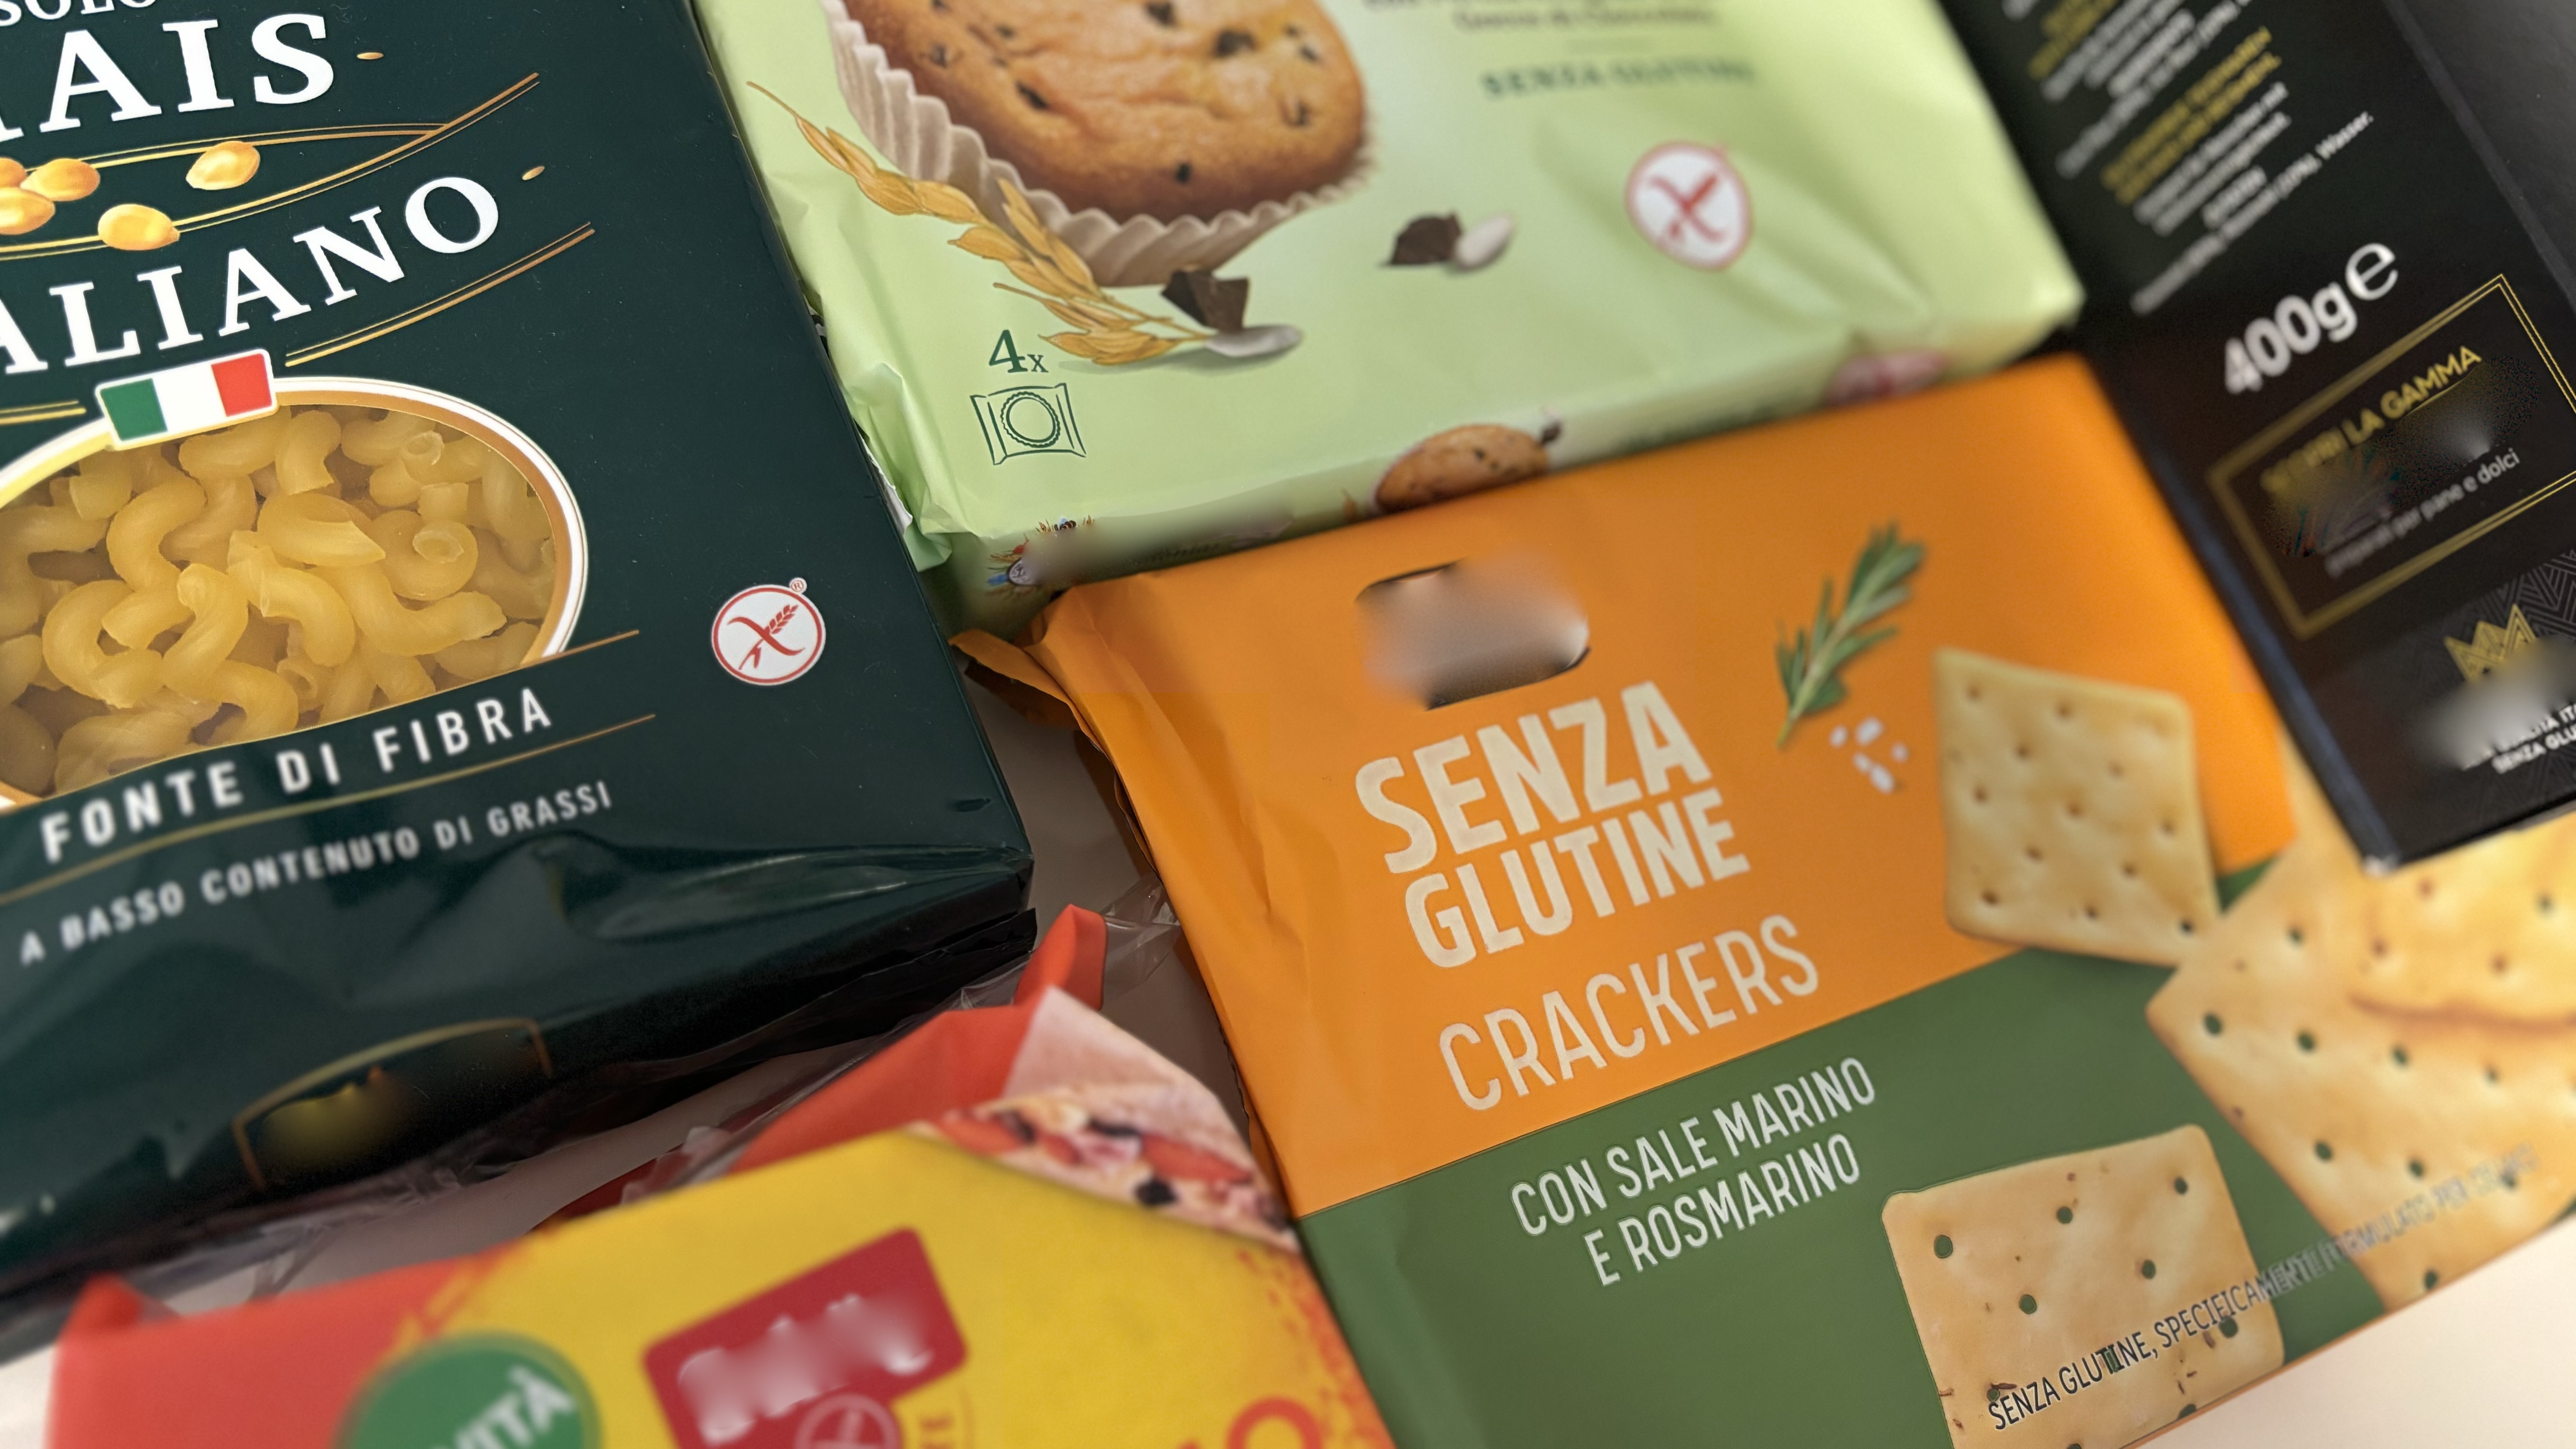 Celiachia, quanto mi costi: cresce domanda di prodotti senza glutine in Sardegna, ma costi proibitivi